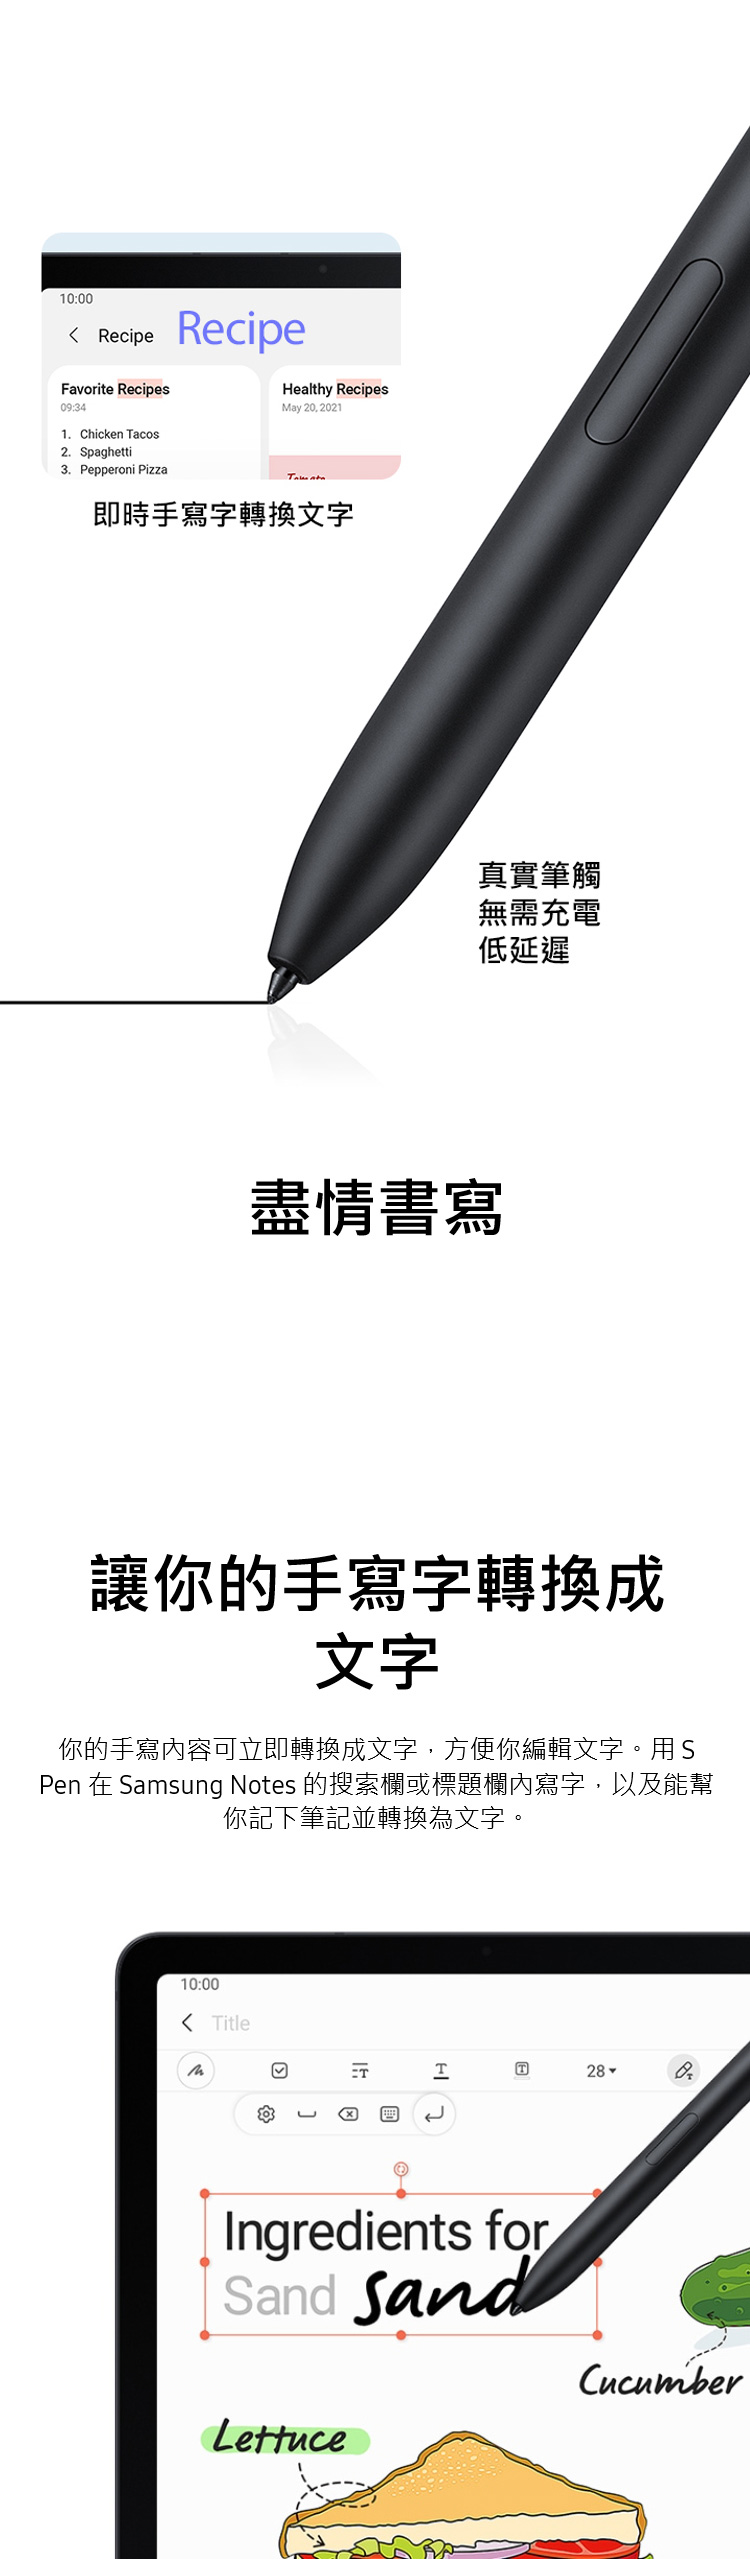 【三星】Galaxy Tab S7 FE Wi-Fi 4G 64G T733